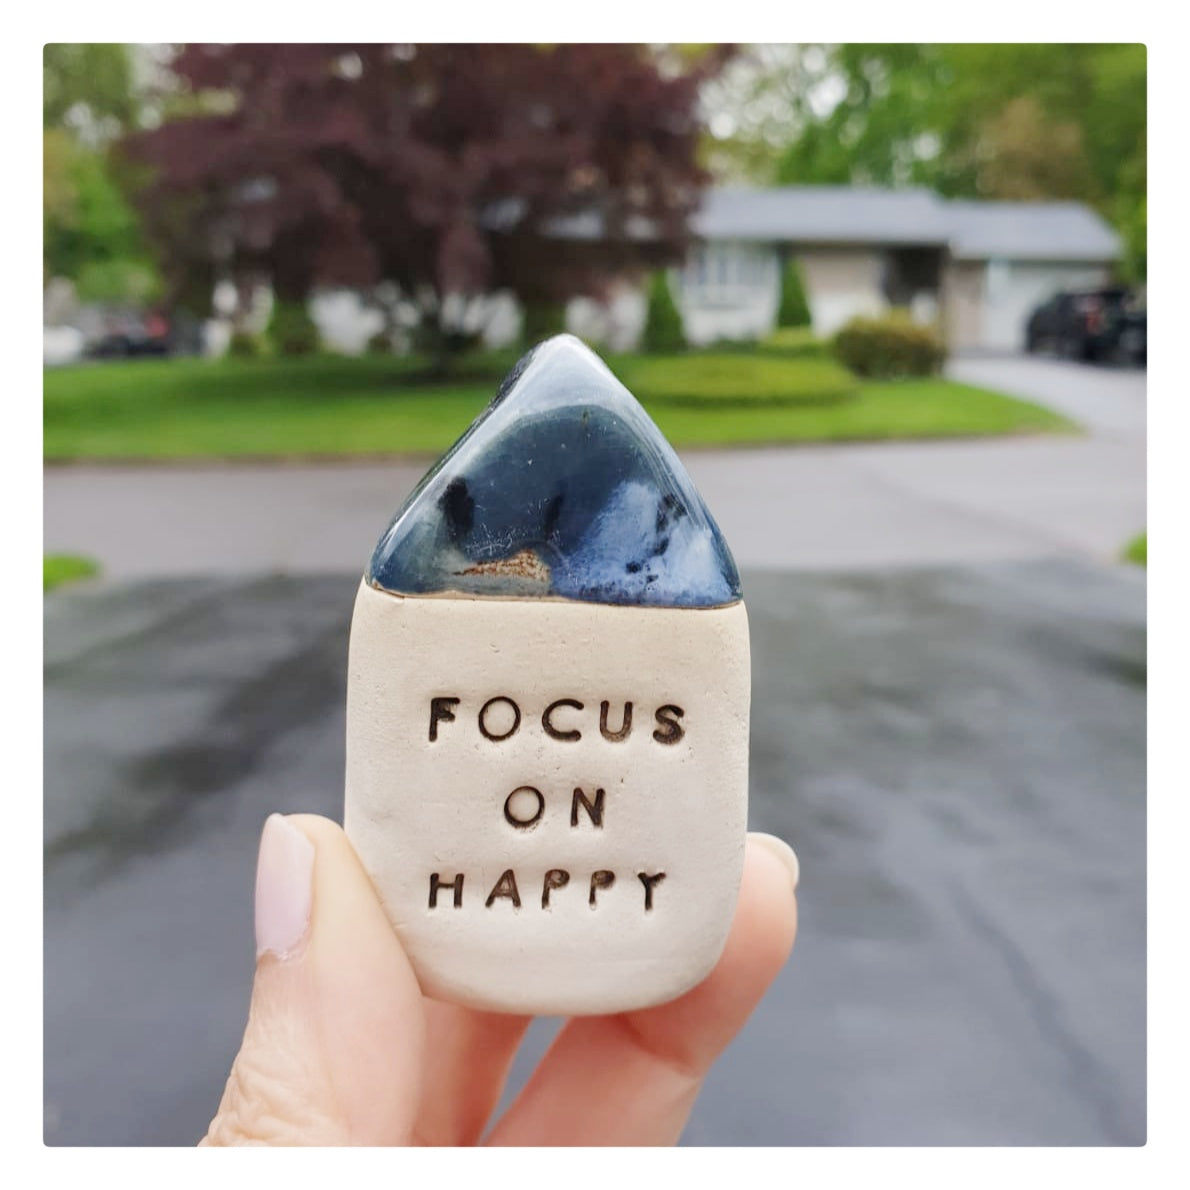 Focus on happy 